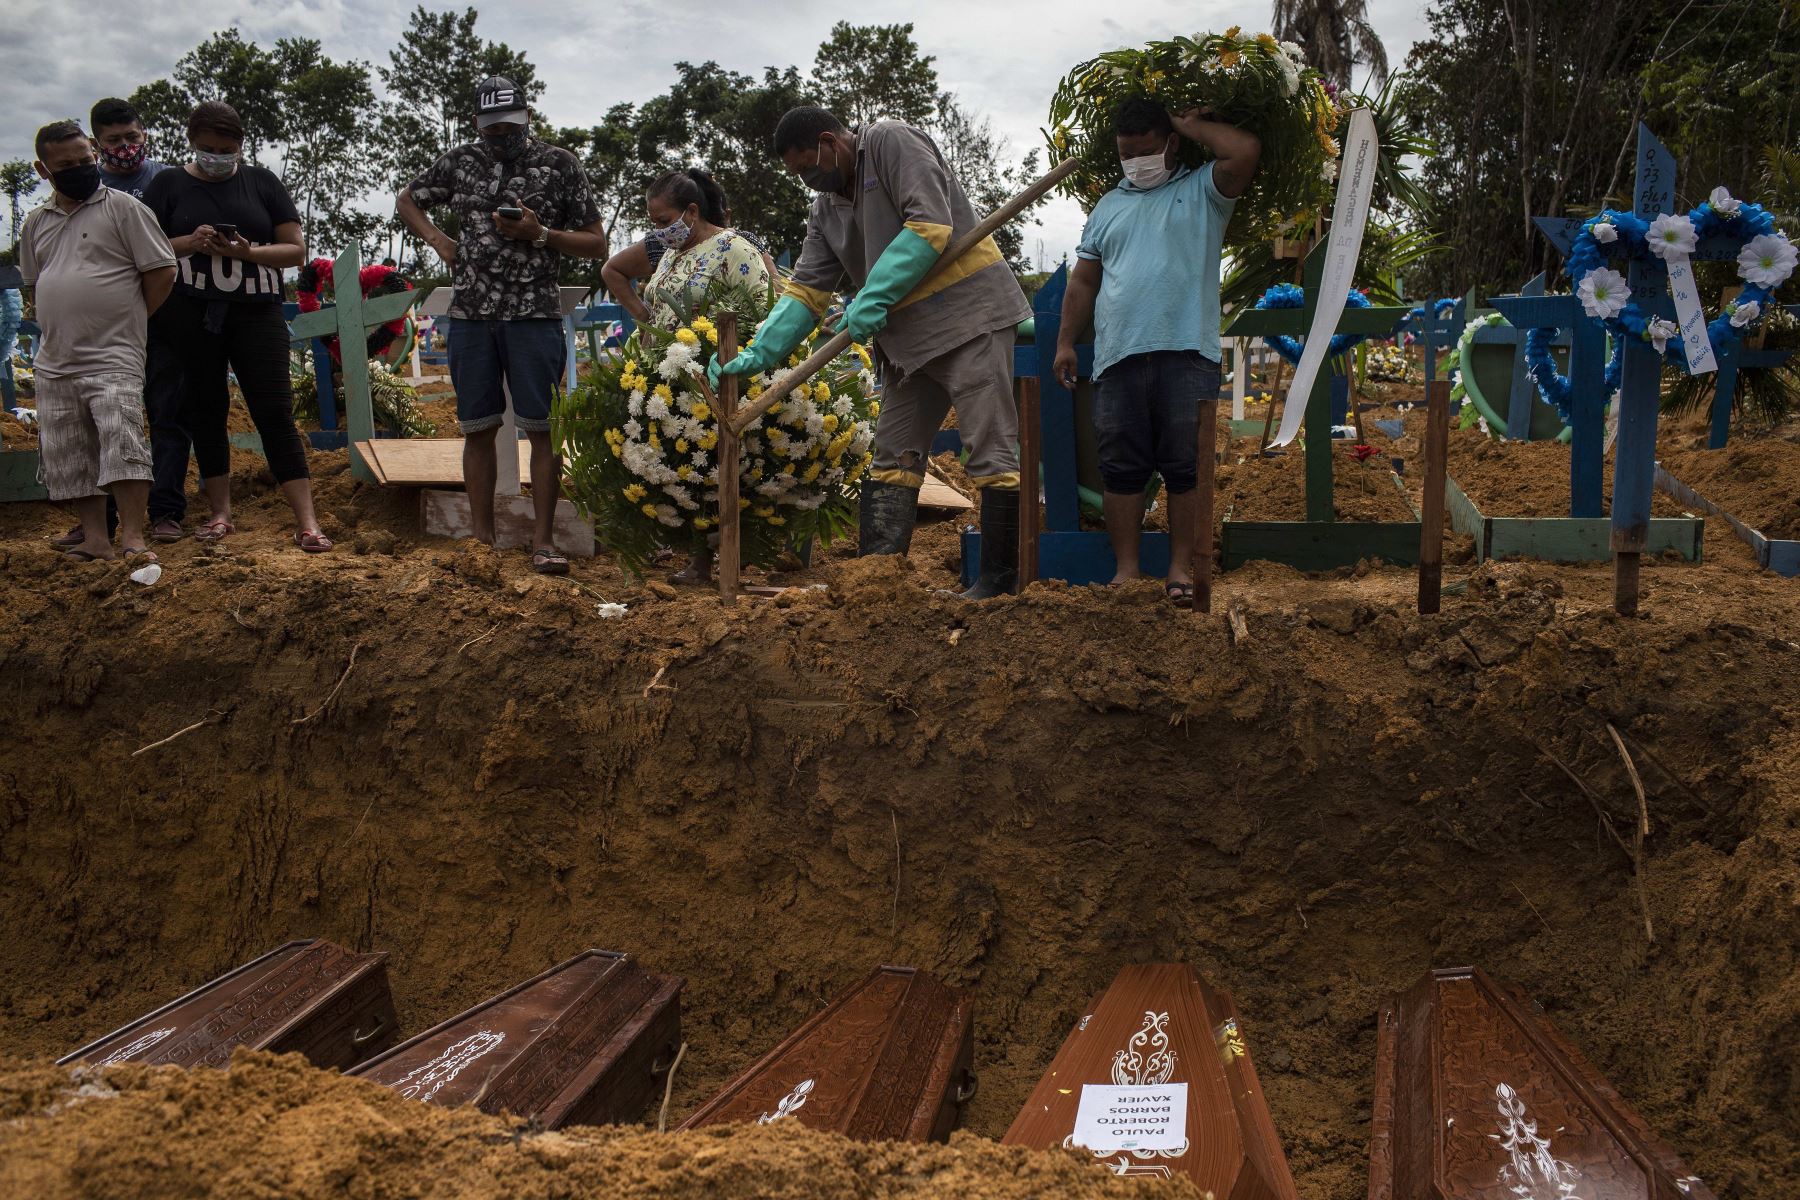 Sepultureros trabajan este martes en un entierro colectivo en el cementerio Nossa Senhora Aparecida mientras familiares despiden a sus seres queridos, en la ciudad de Manaos, estado Amazonas (Brasil). Foto: EFE